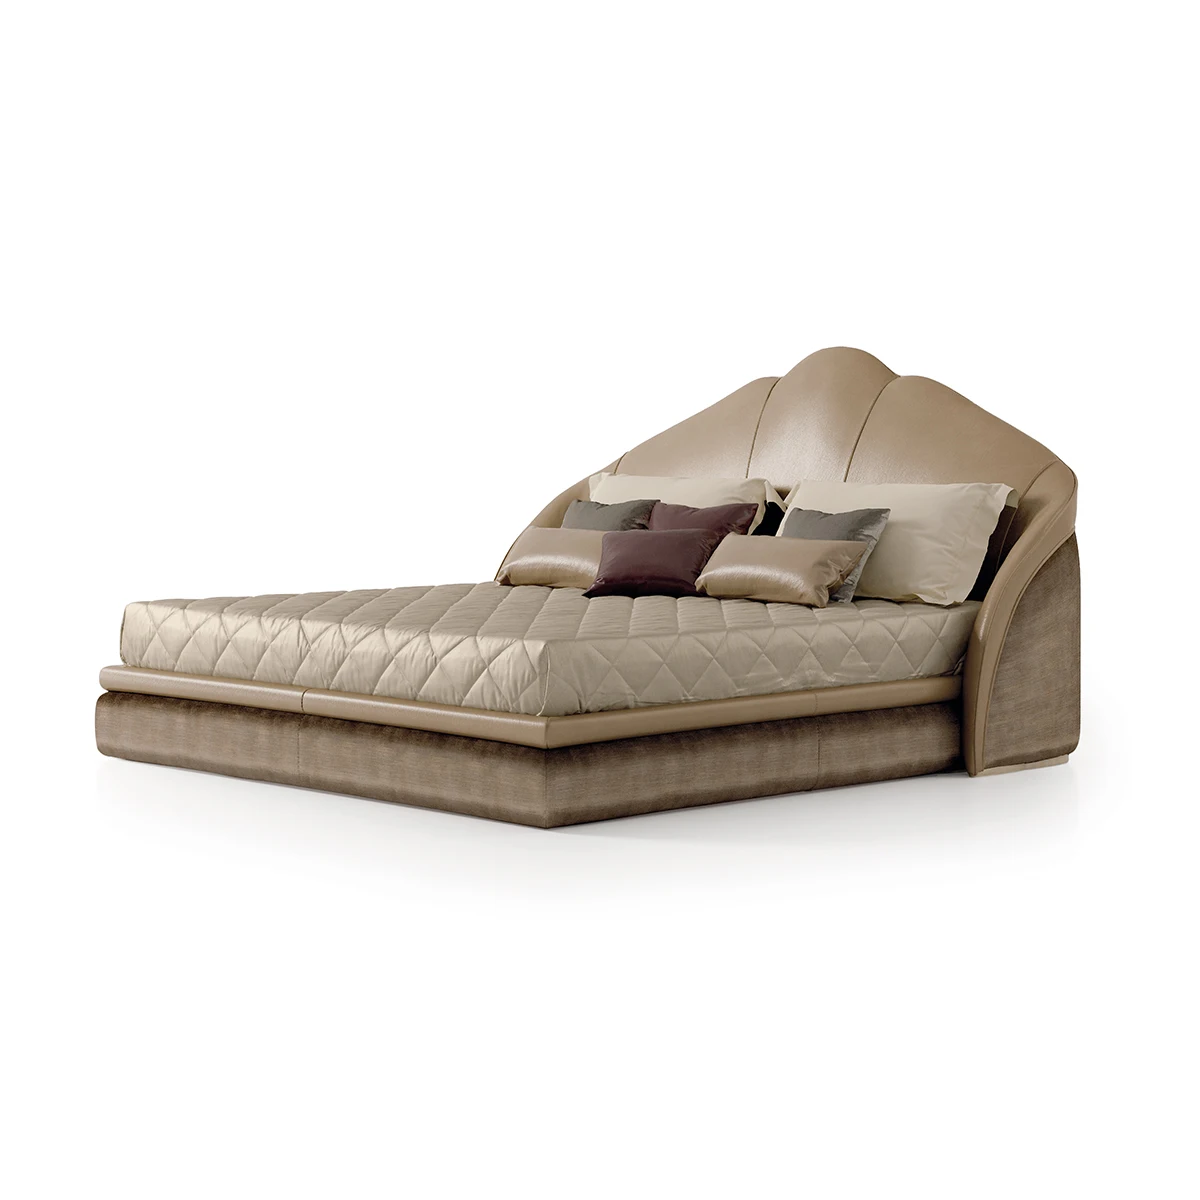 2021 new design European customized light luxury leather velvet woven bed